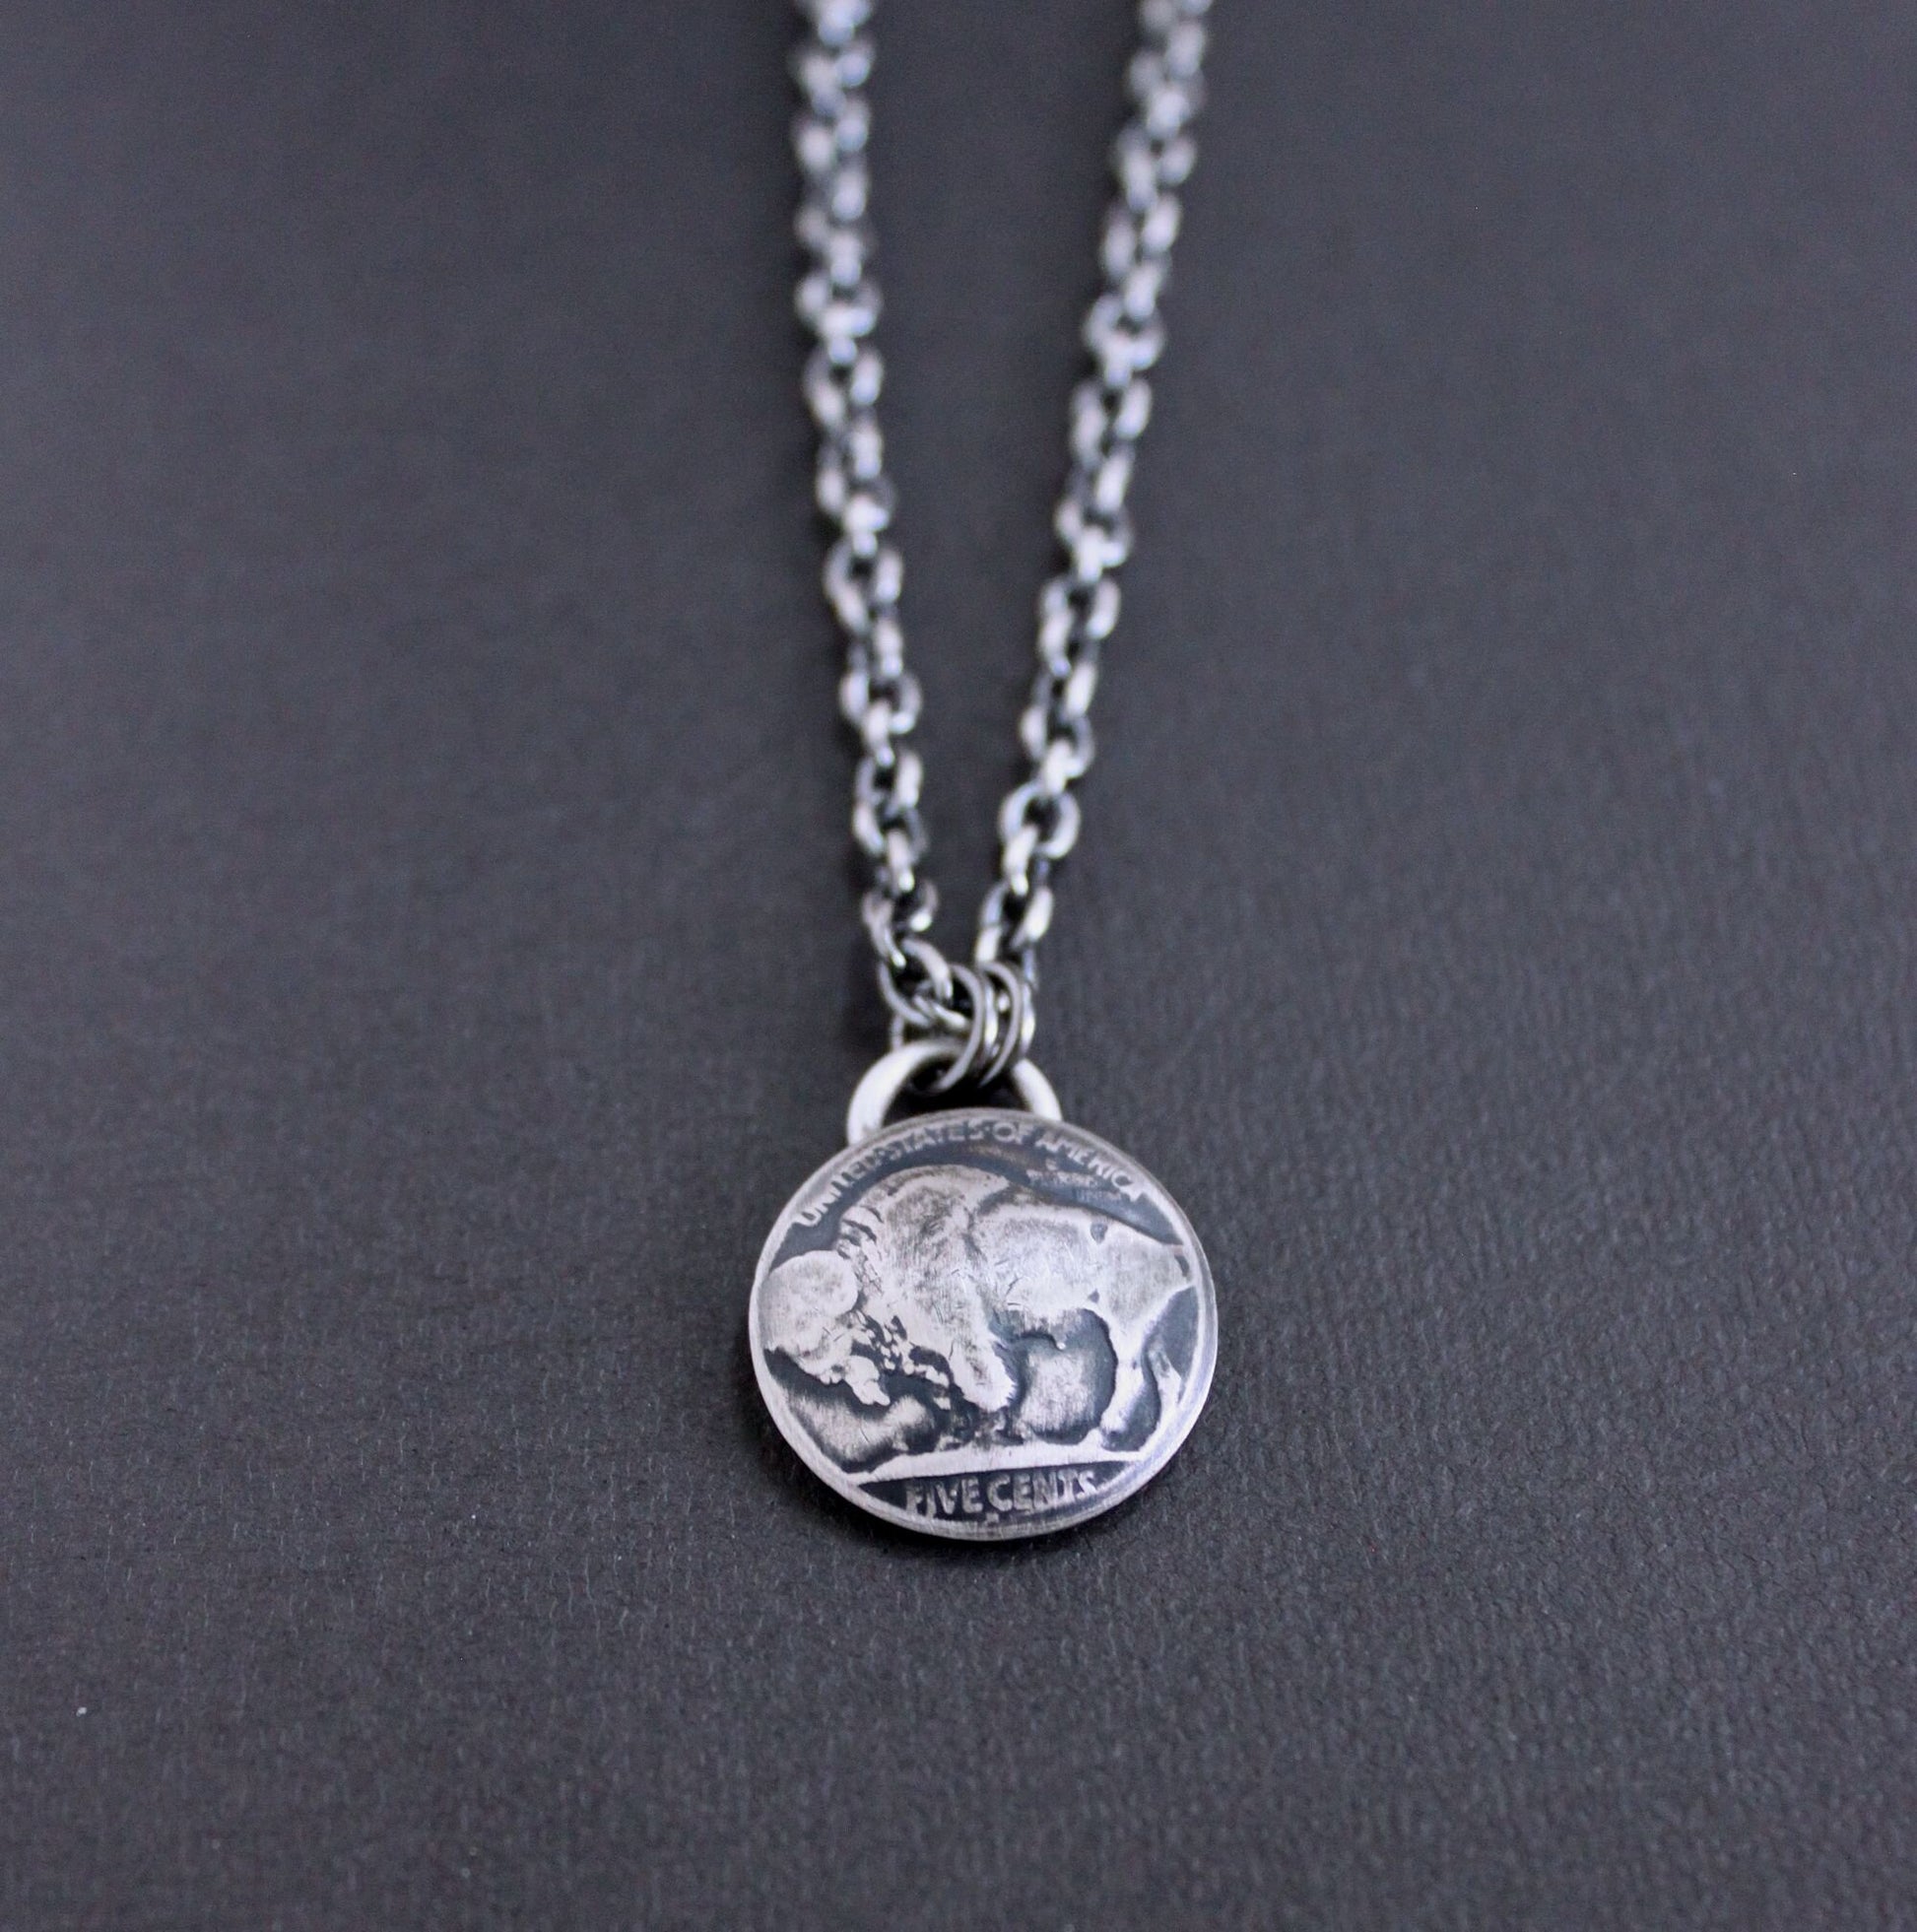 Men's buffalo nickel pendant necklace